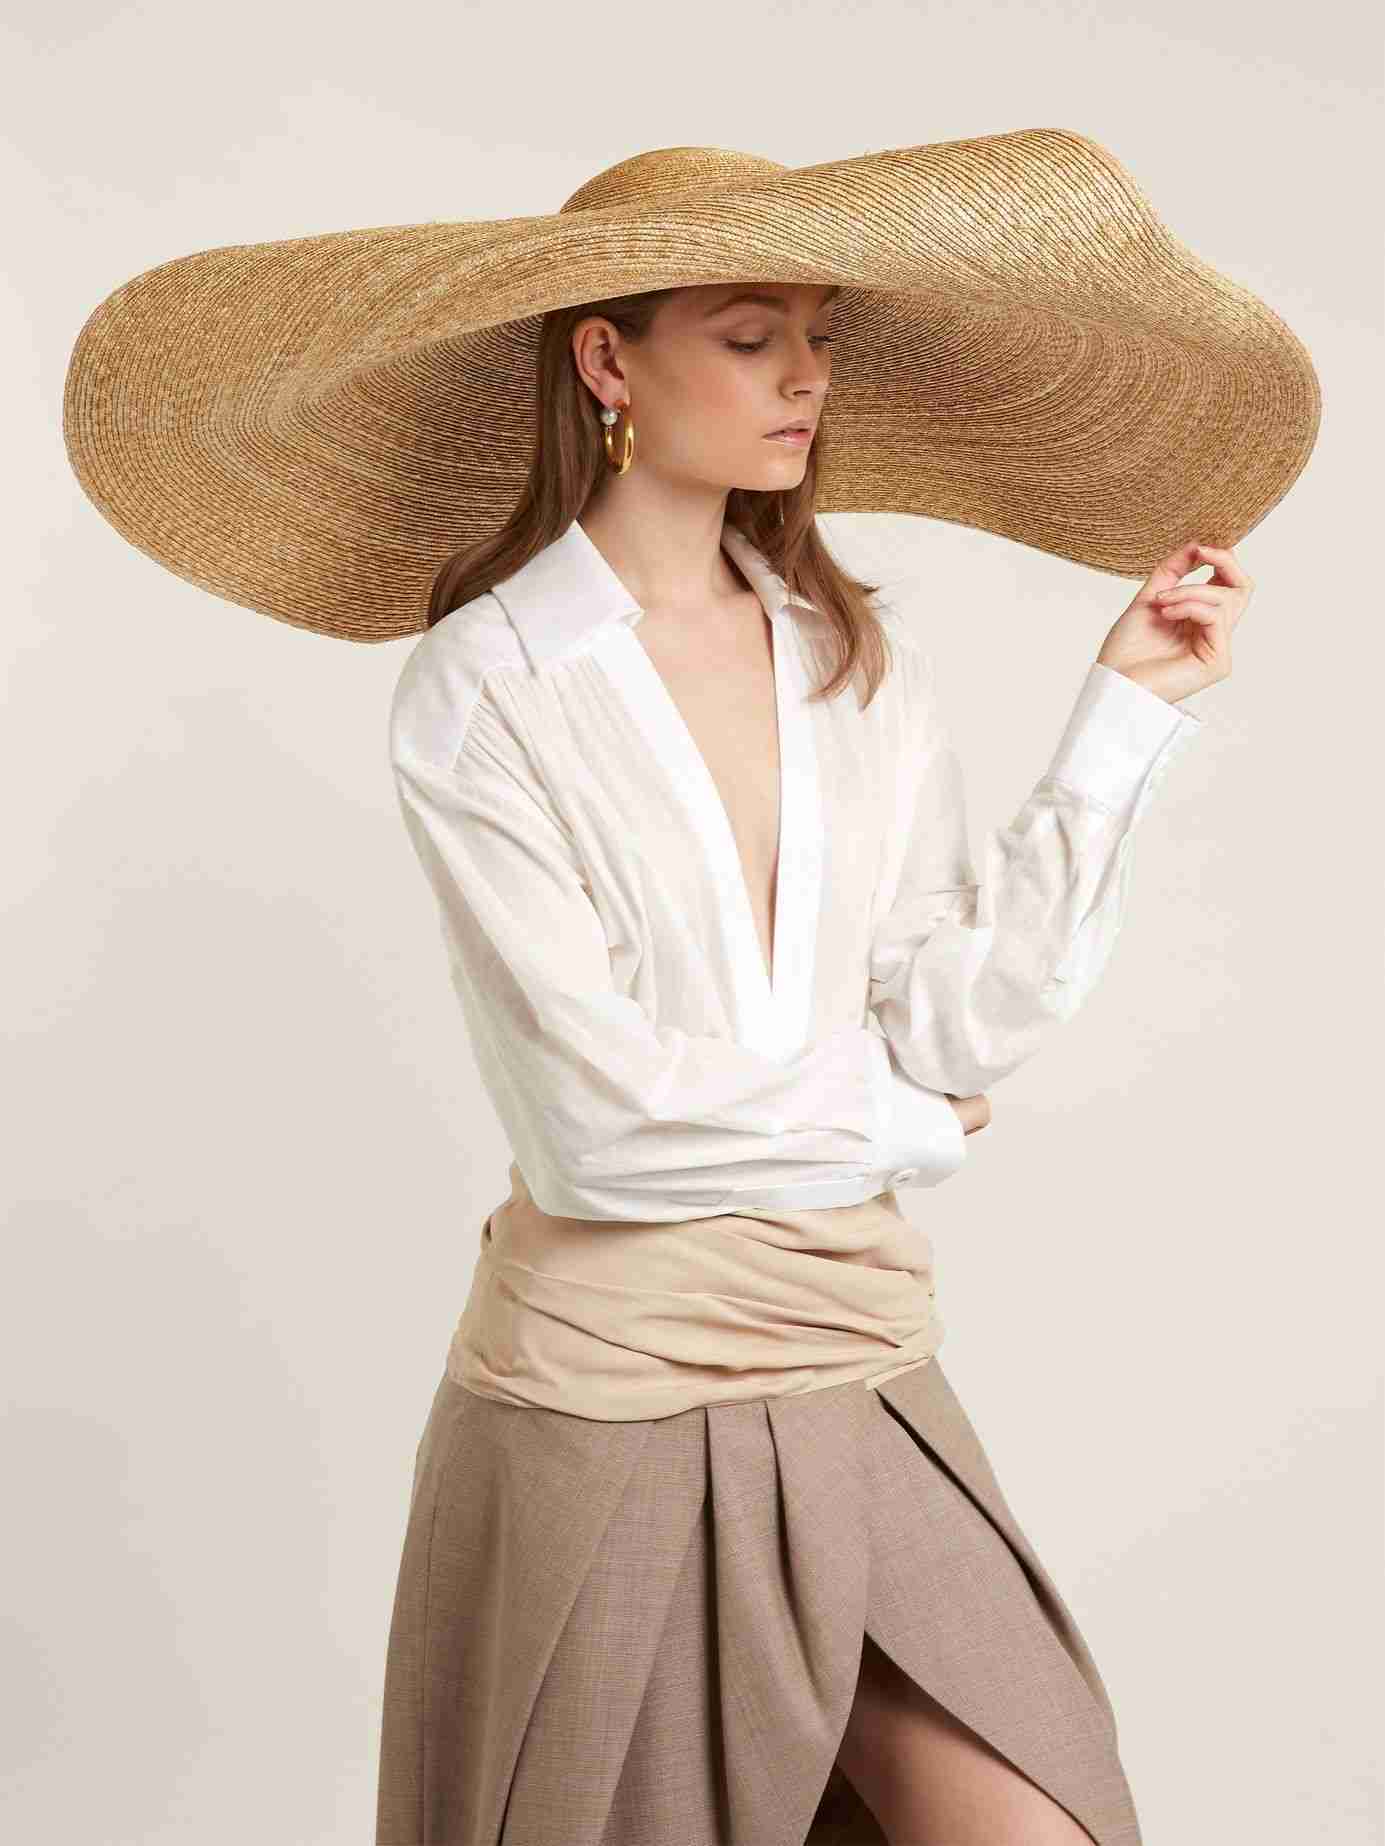 XXL halmhat til kvinder modetrends sommer 2019 skjortebluse hvid